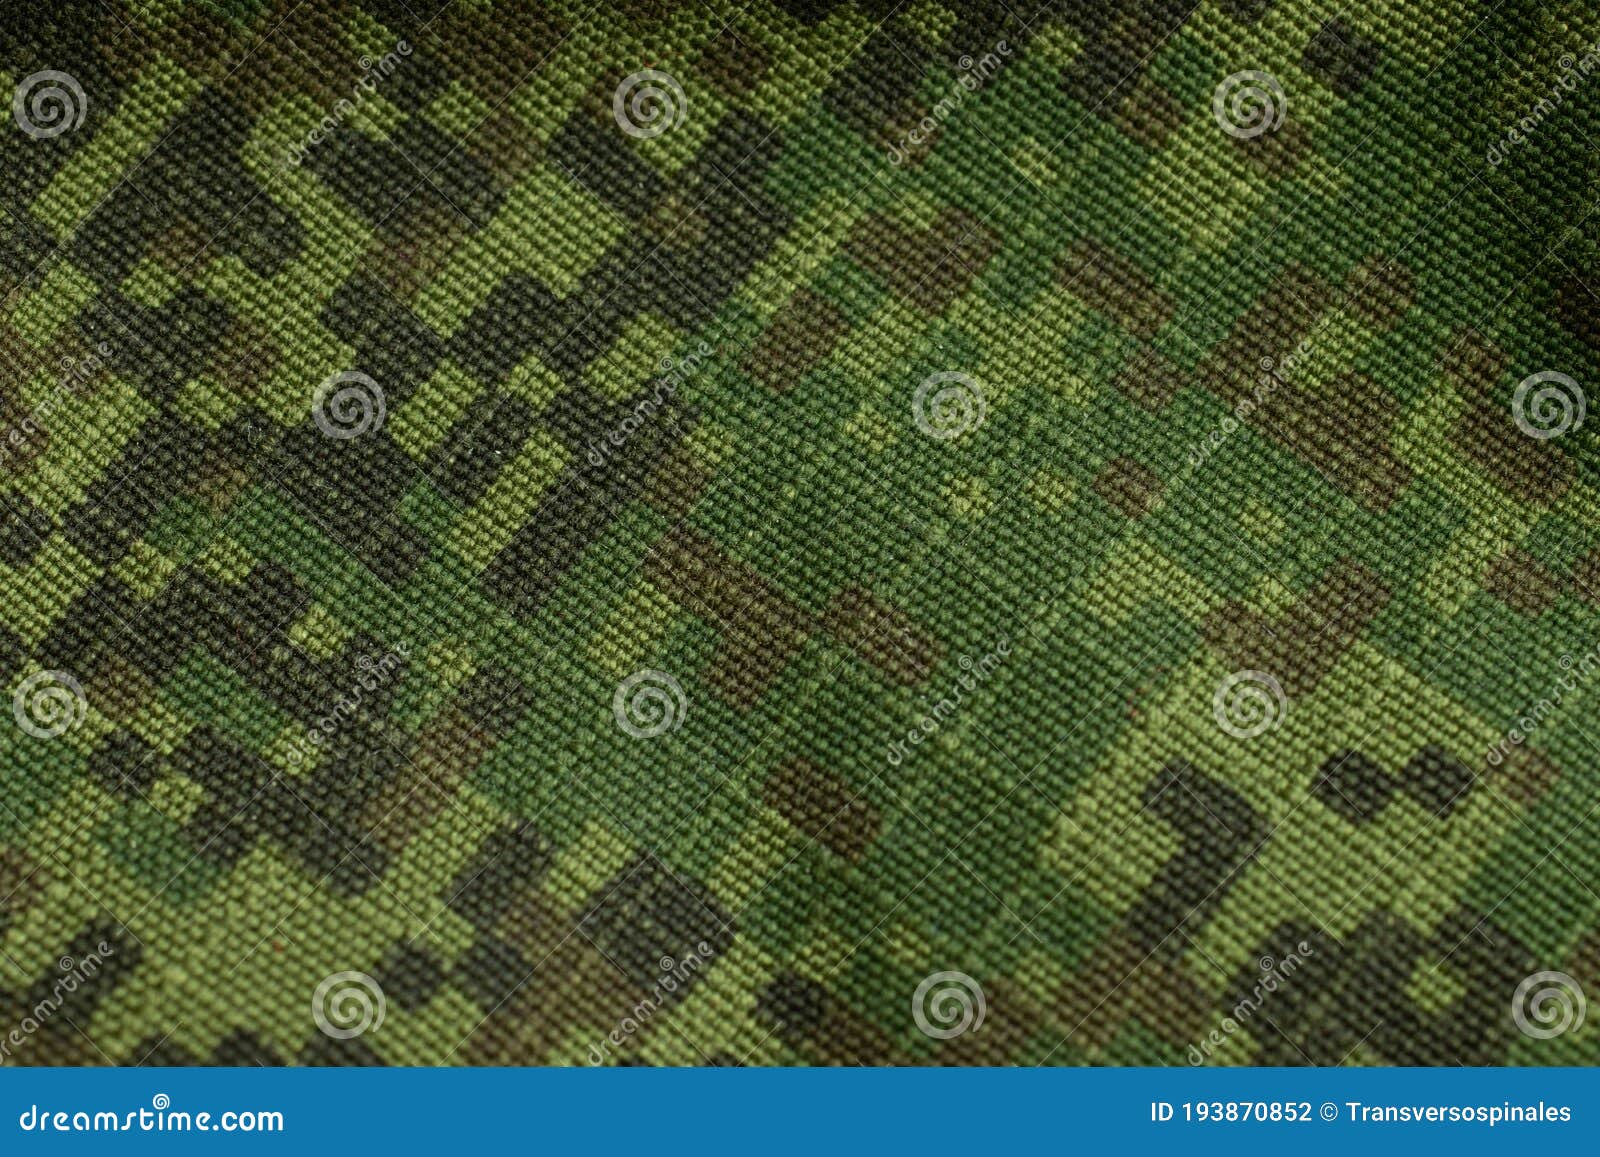 Sự kết hợp độc đáo giữa màu xanh lá cây và chất liệu vải quân đội tạo nên những hình ảnh độc đáo và đầy sức hút. Với những bức ảnh này, bạn sẽ khám phá được sự mạnh mẽ và nam tính của những sản phẩm được làm từ chất liệu này.